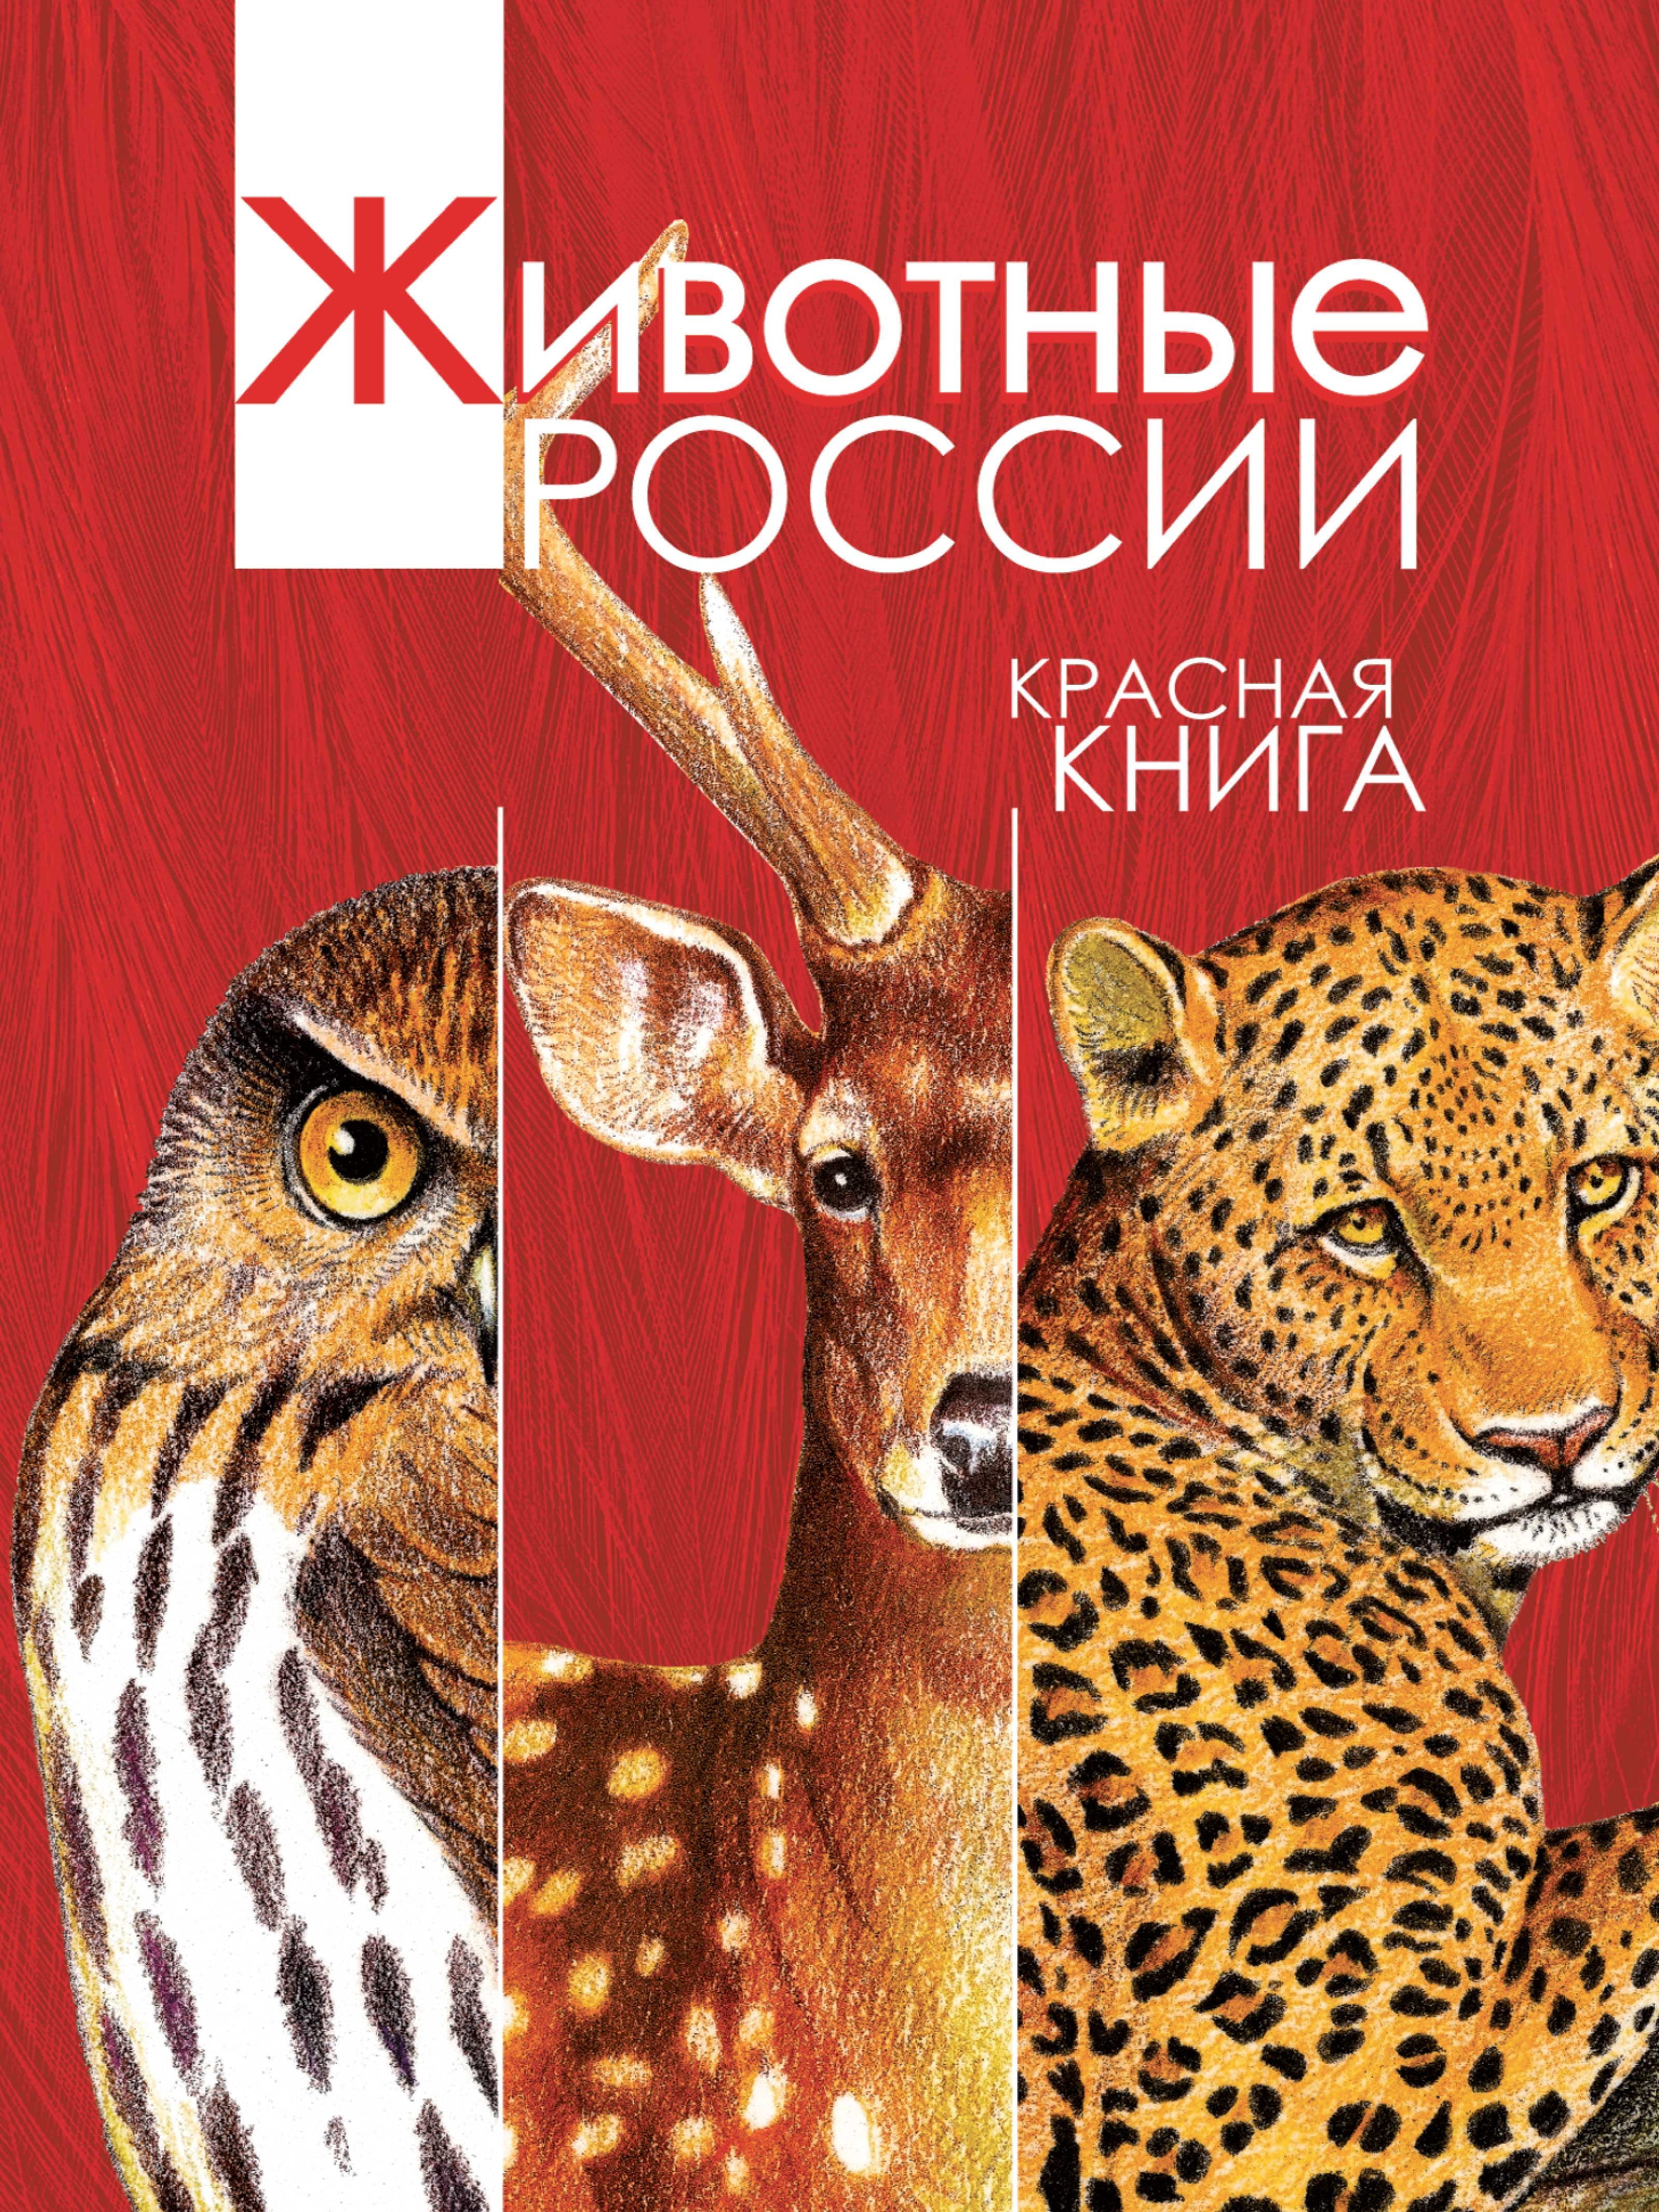 Фото красной книги россии фото и описание для детей